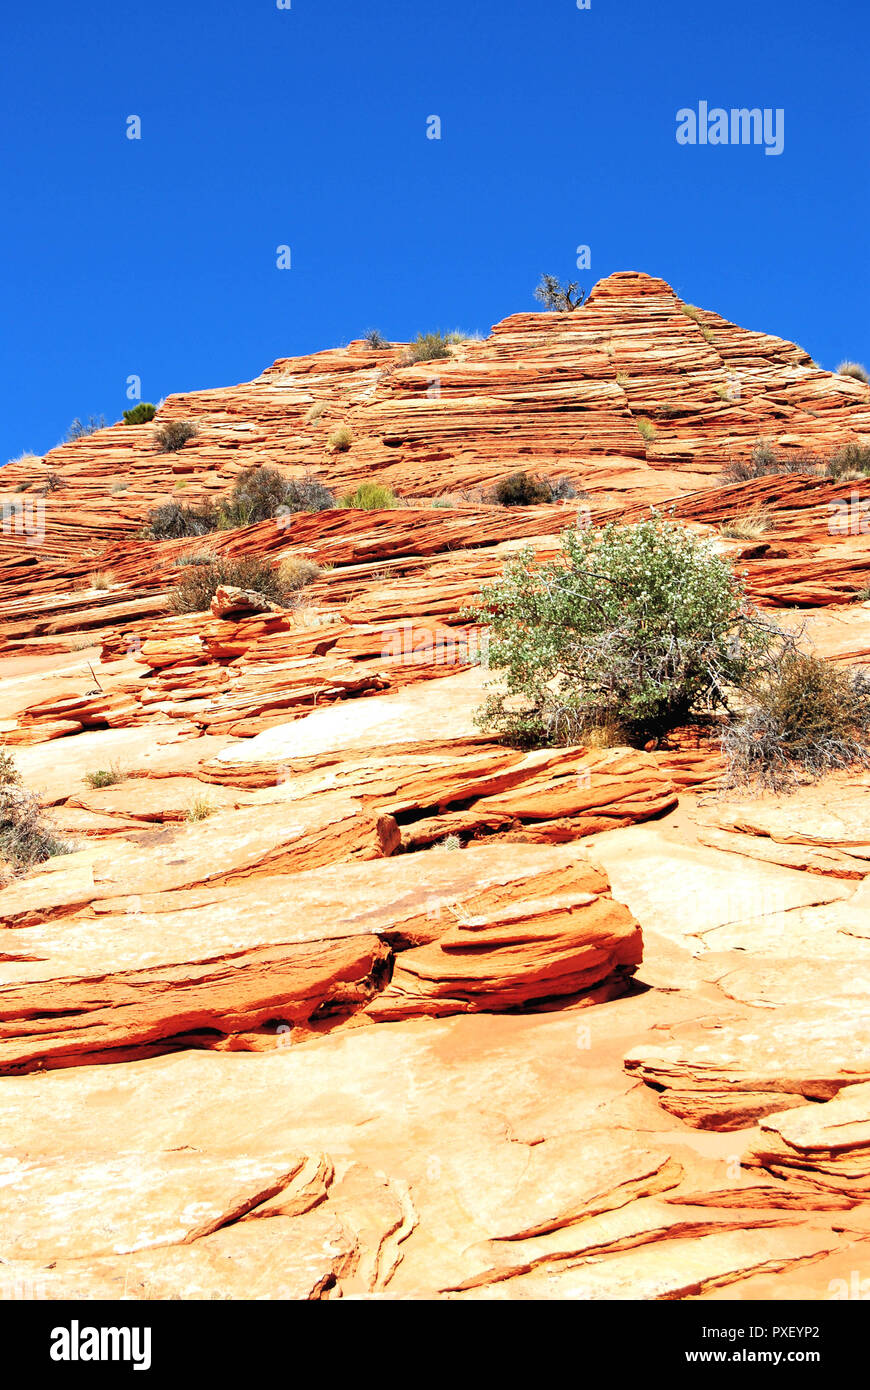 Un vecchio giallo butte di rocce sedimentarie nel deserto arido, con un cielo blu chiaro, in Coyte Buttes, Vermillion Cliffs National Monument, Arizona, Stati Uniti. Foto Stock